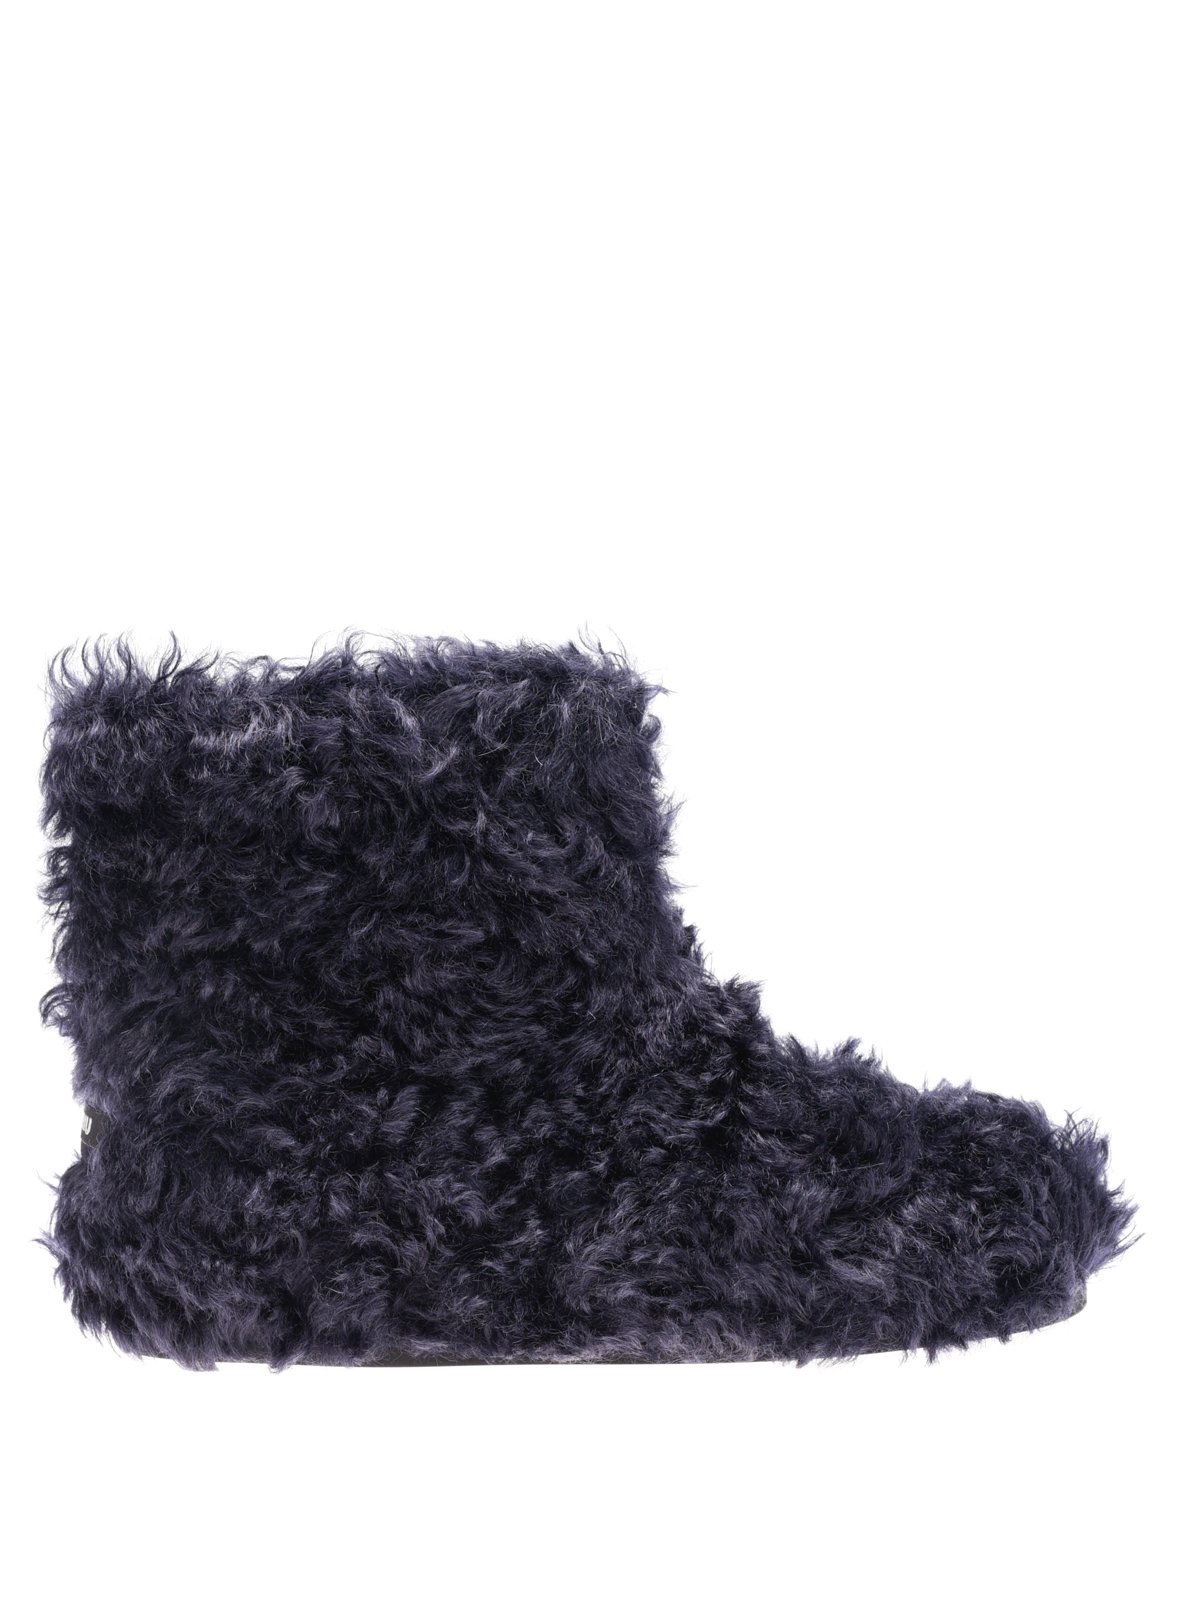 Miu Miu - Eco shearling winter boots 